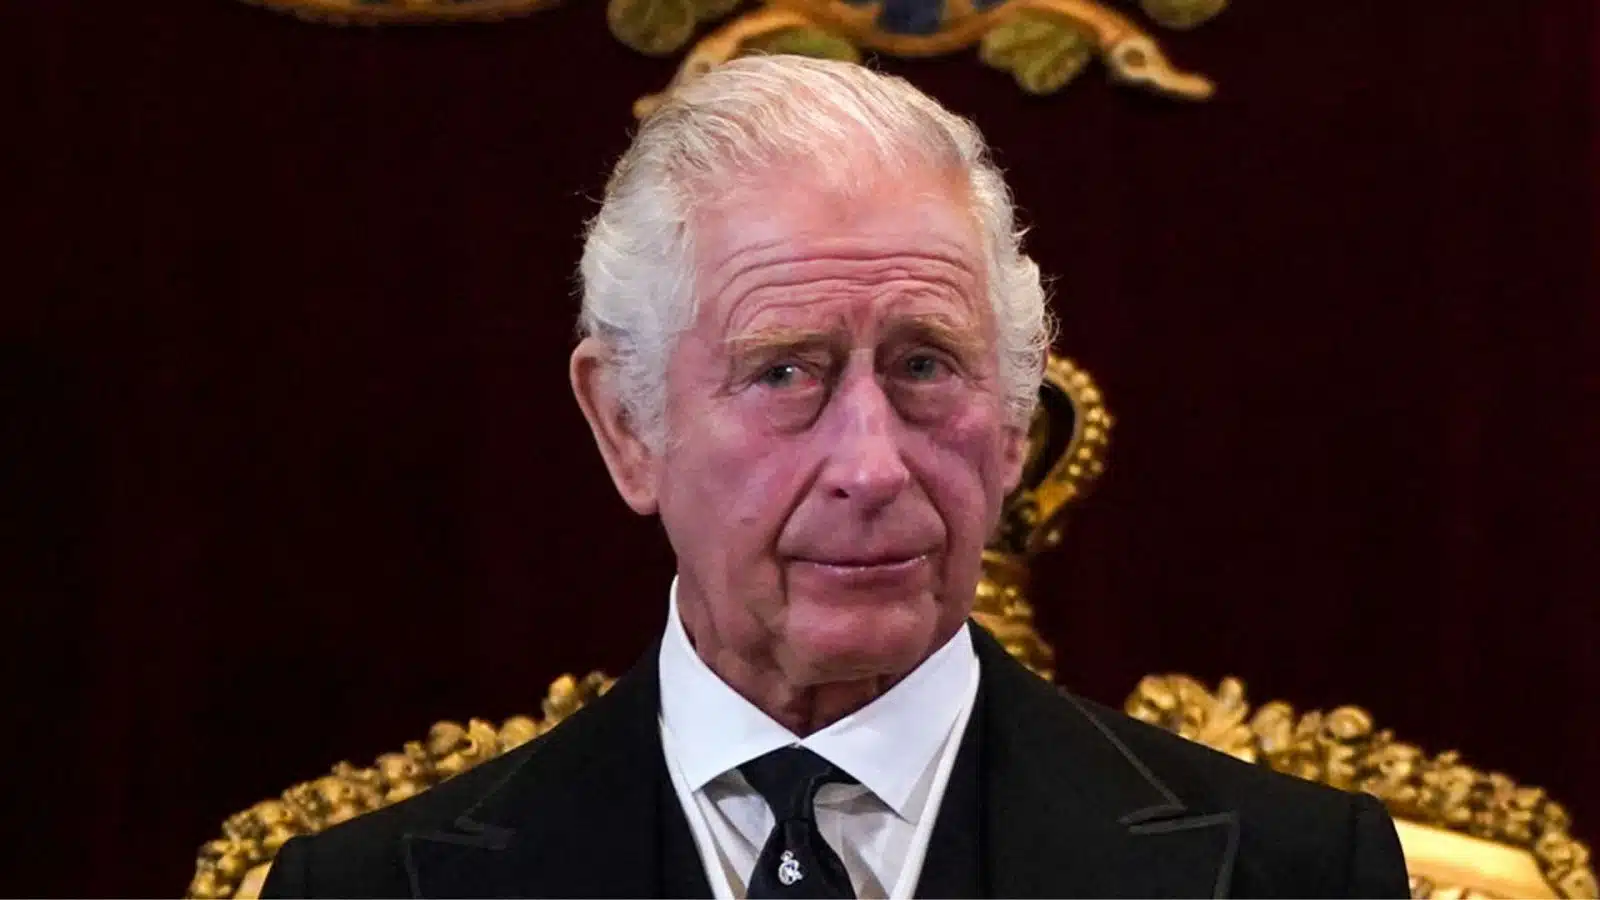 Develan el primer retrato oficial del rey Carlos III